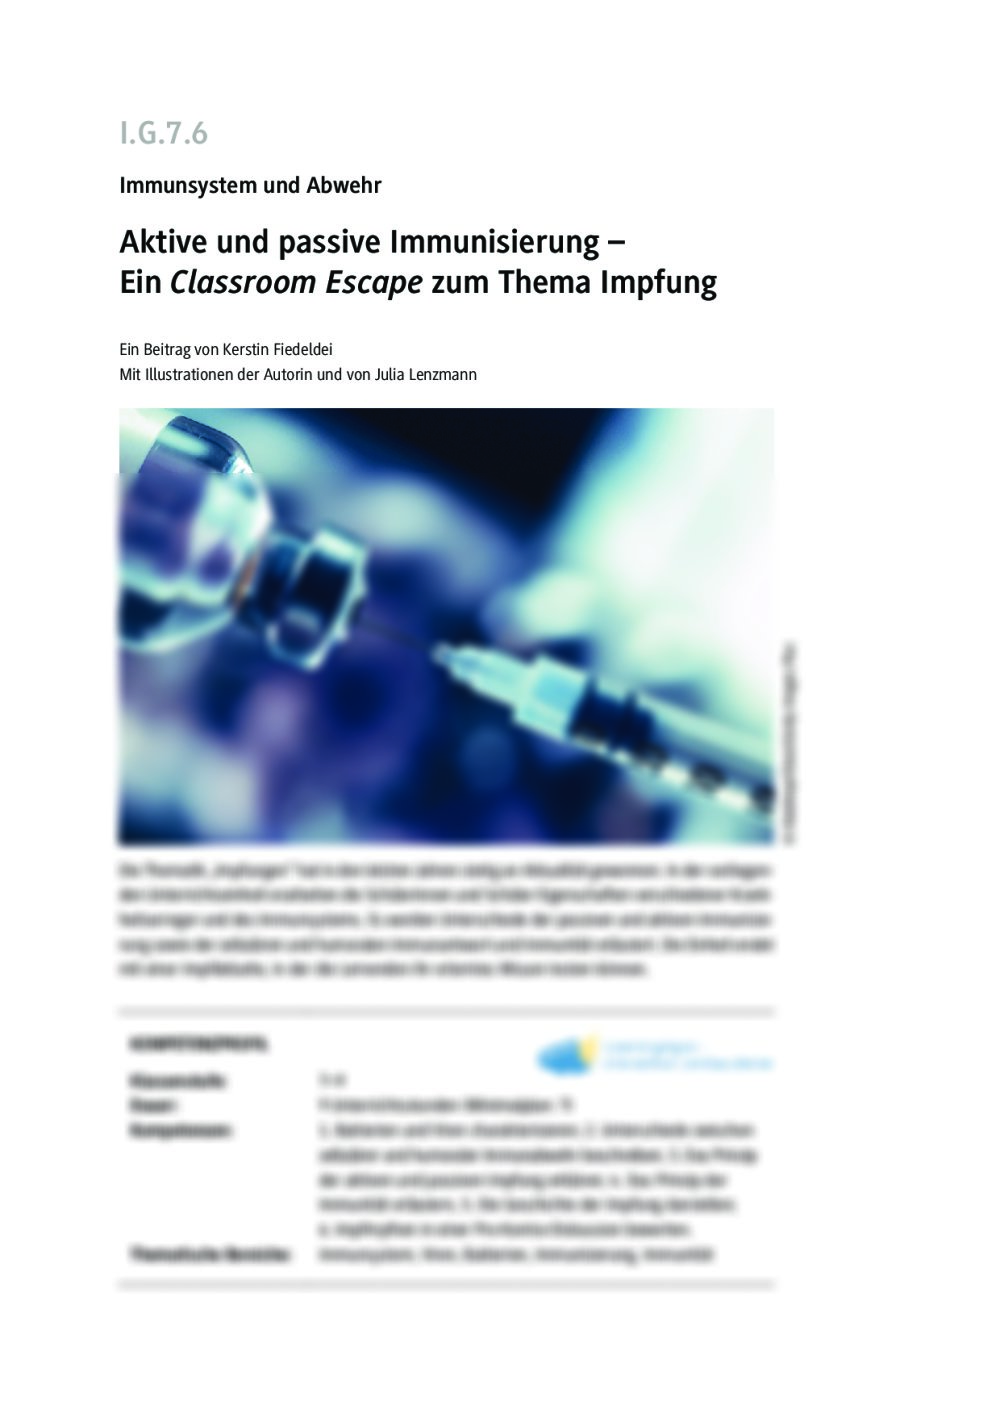 Aktive und passive Immunisierung - Seite 1